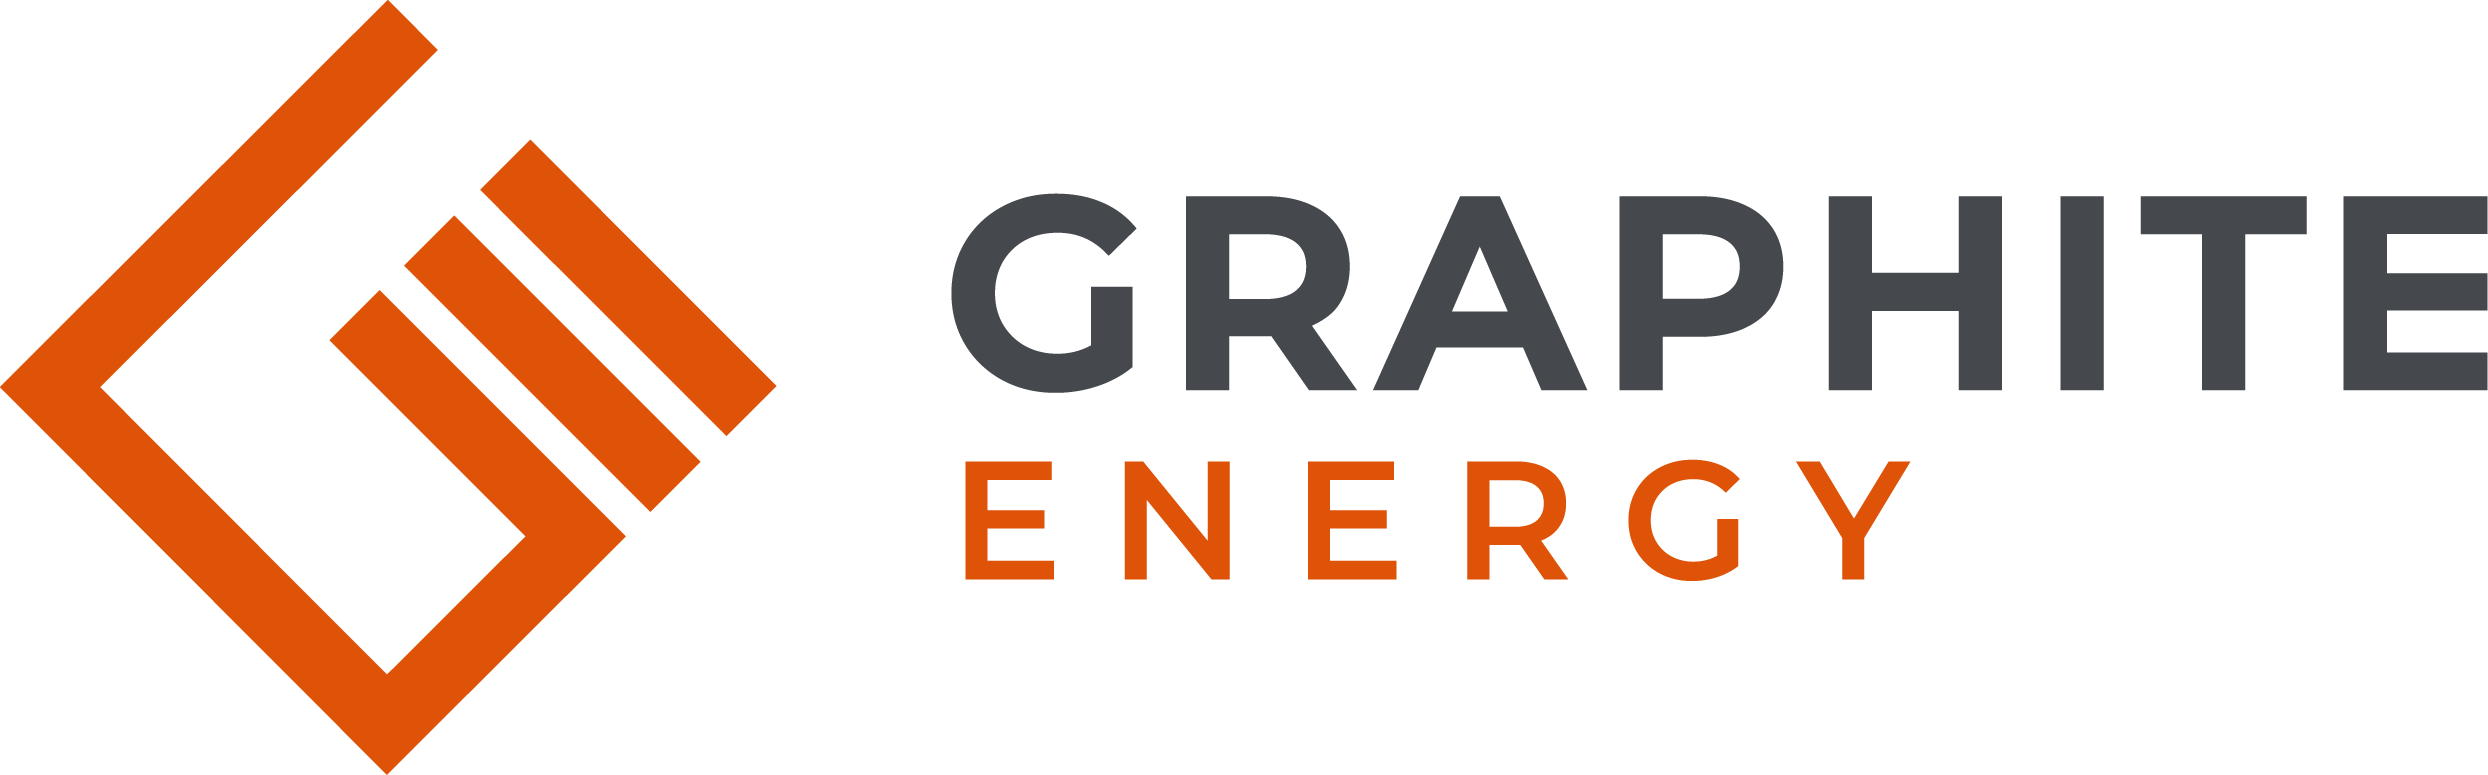 Graphite energy